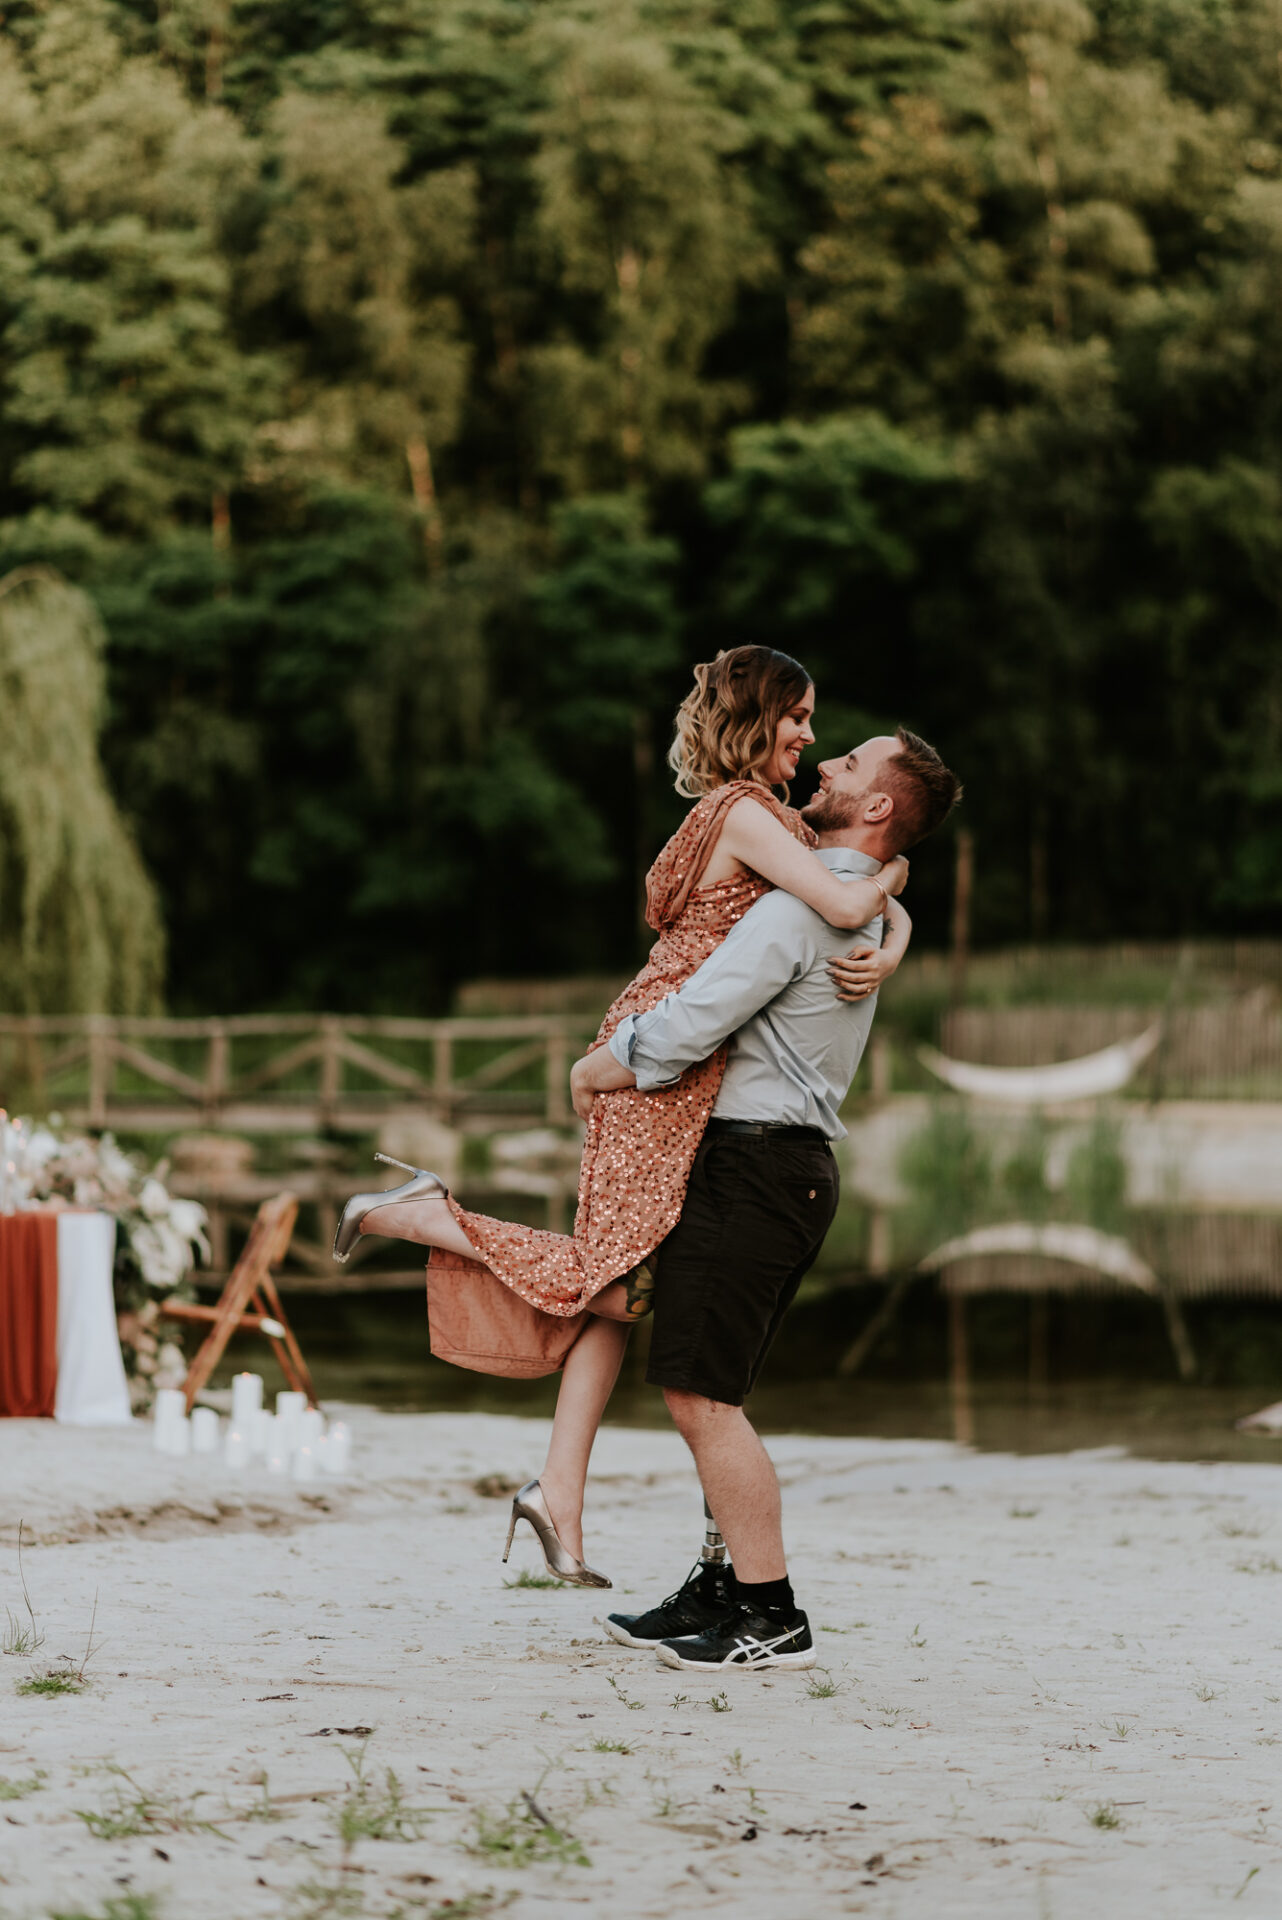 huwelijksaanzoek fotoshoot verlovingsshoot trouwaanzoek fotograaf